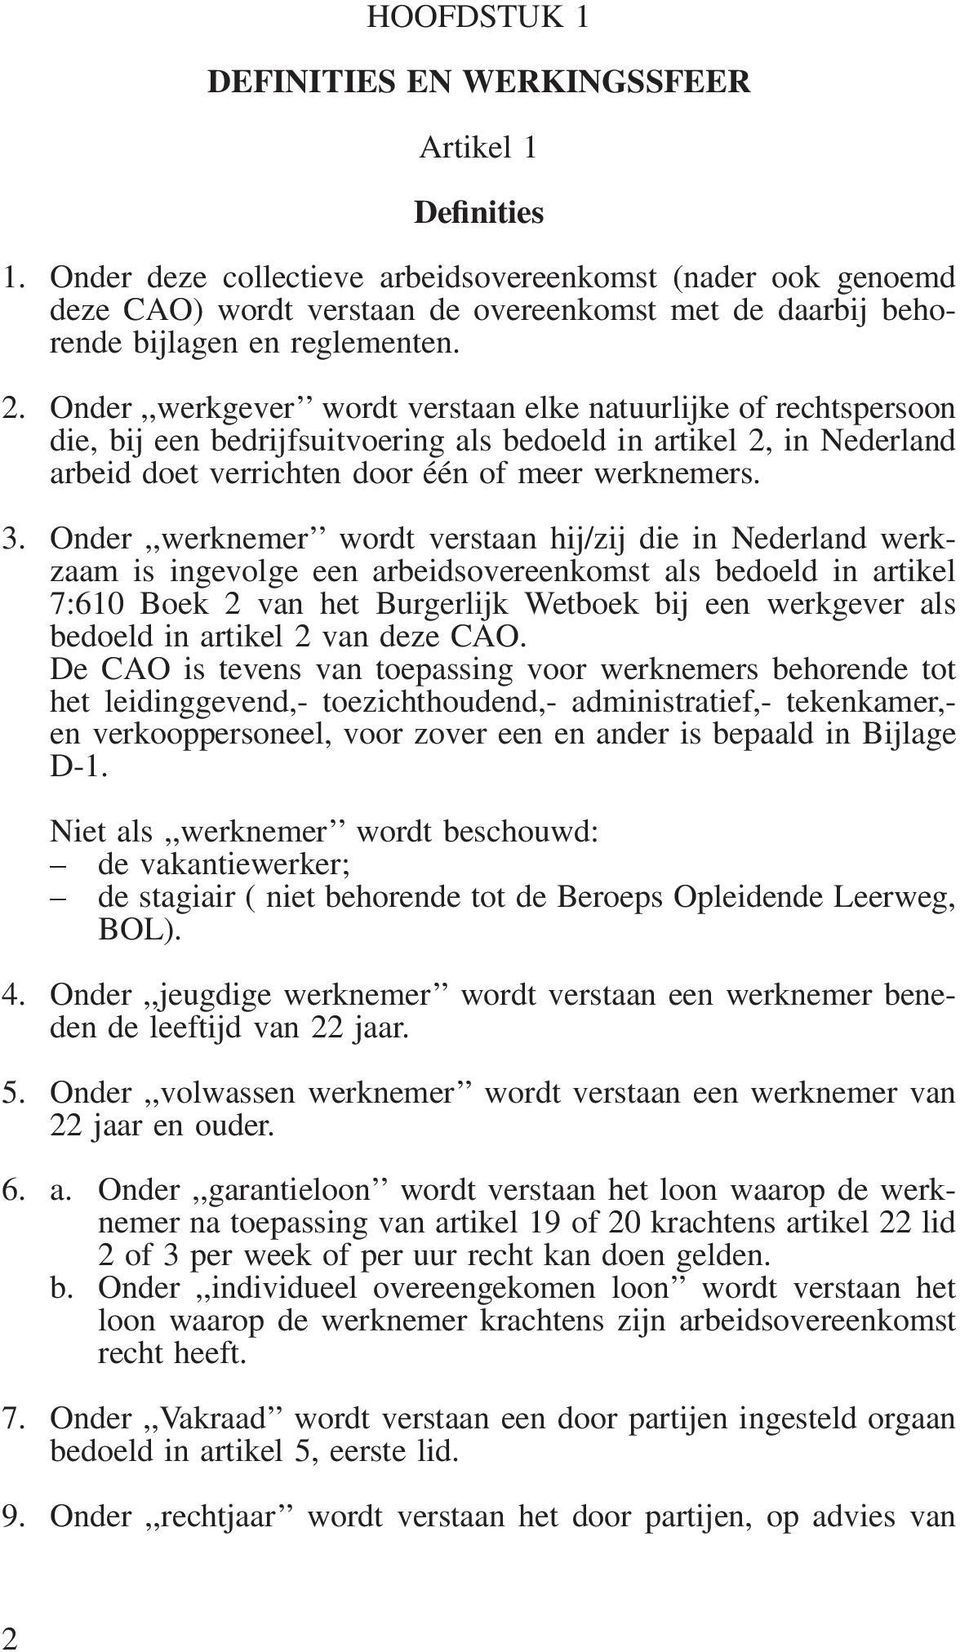 Onder,,werkgever wordt verstaan elke natuurlijke of rechtspersoon die, bij een bedrijfsuitvoering als bedoeld in artikel 2, in Nederland arbeid doet verrichten door één of meer werknemers. 3.